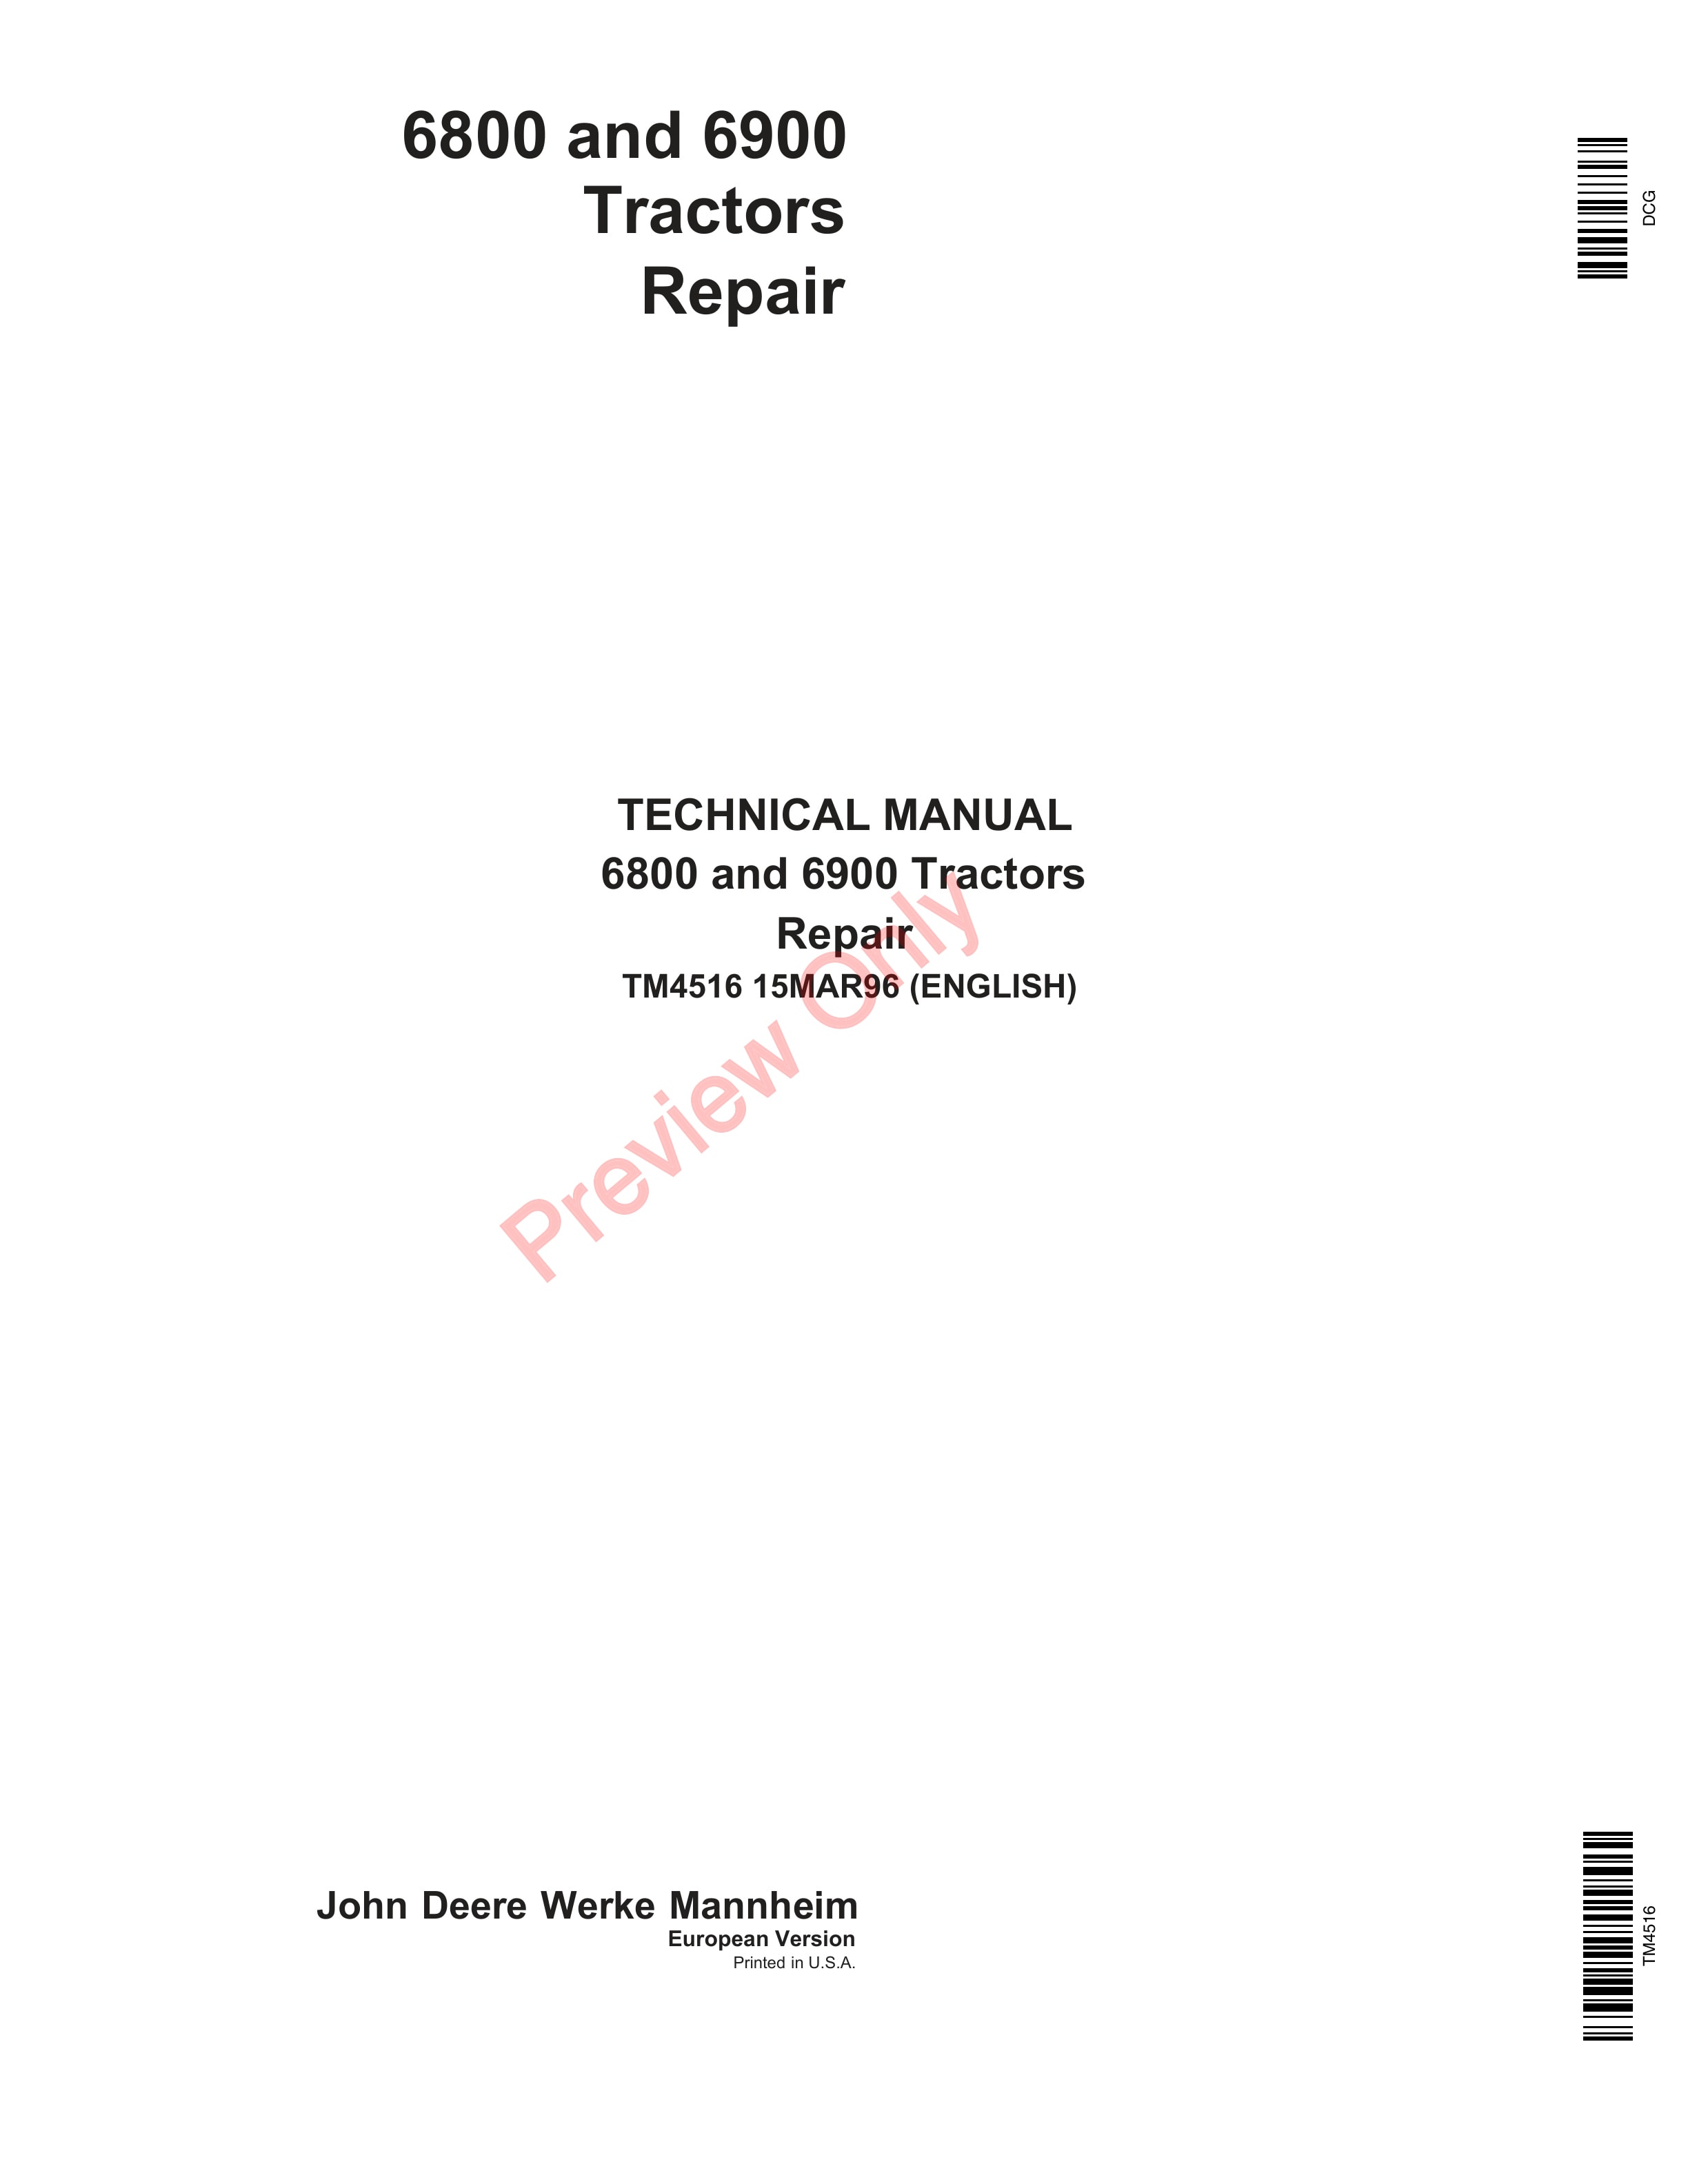 John Deere 6800 and 6900 Tractors Repair Technical Manual TM4516 15MAR96 PDF